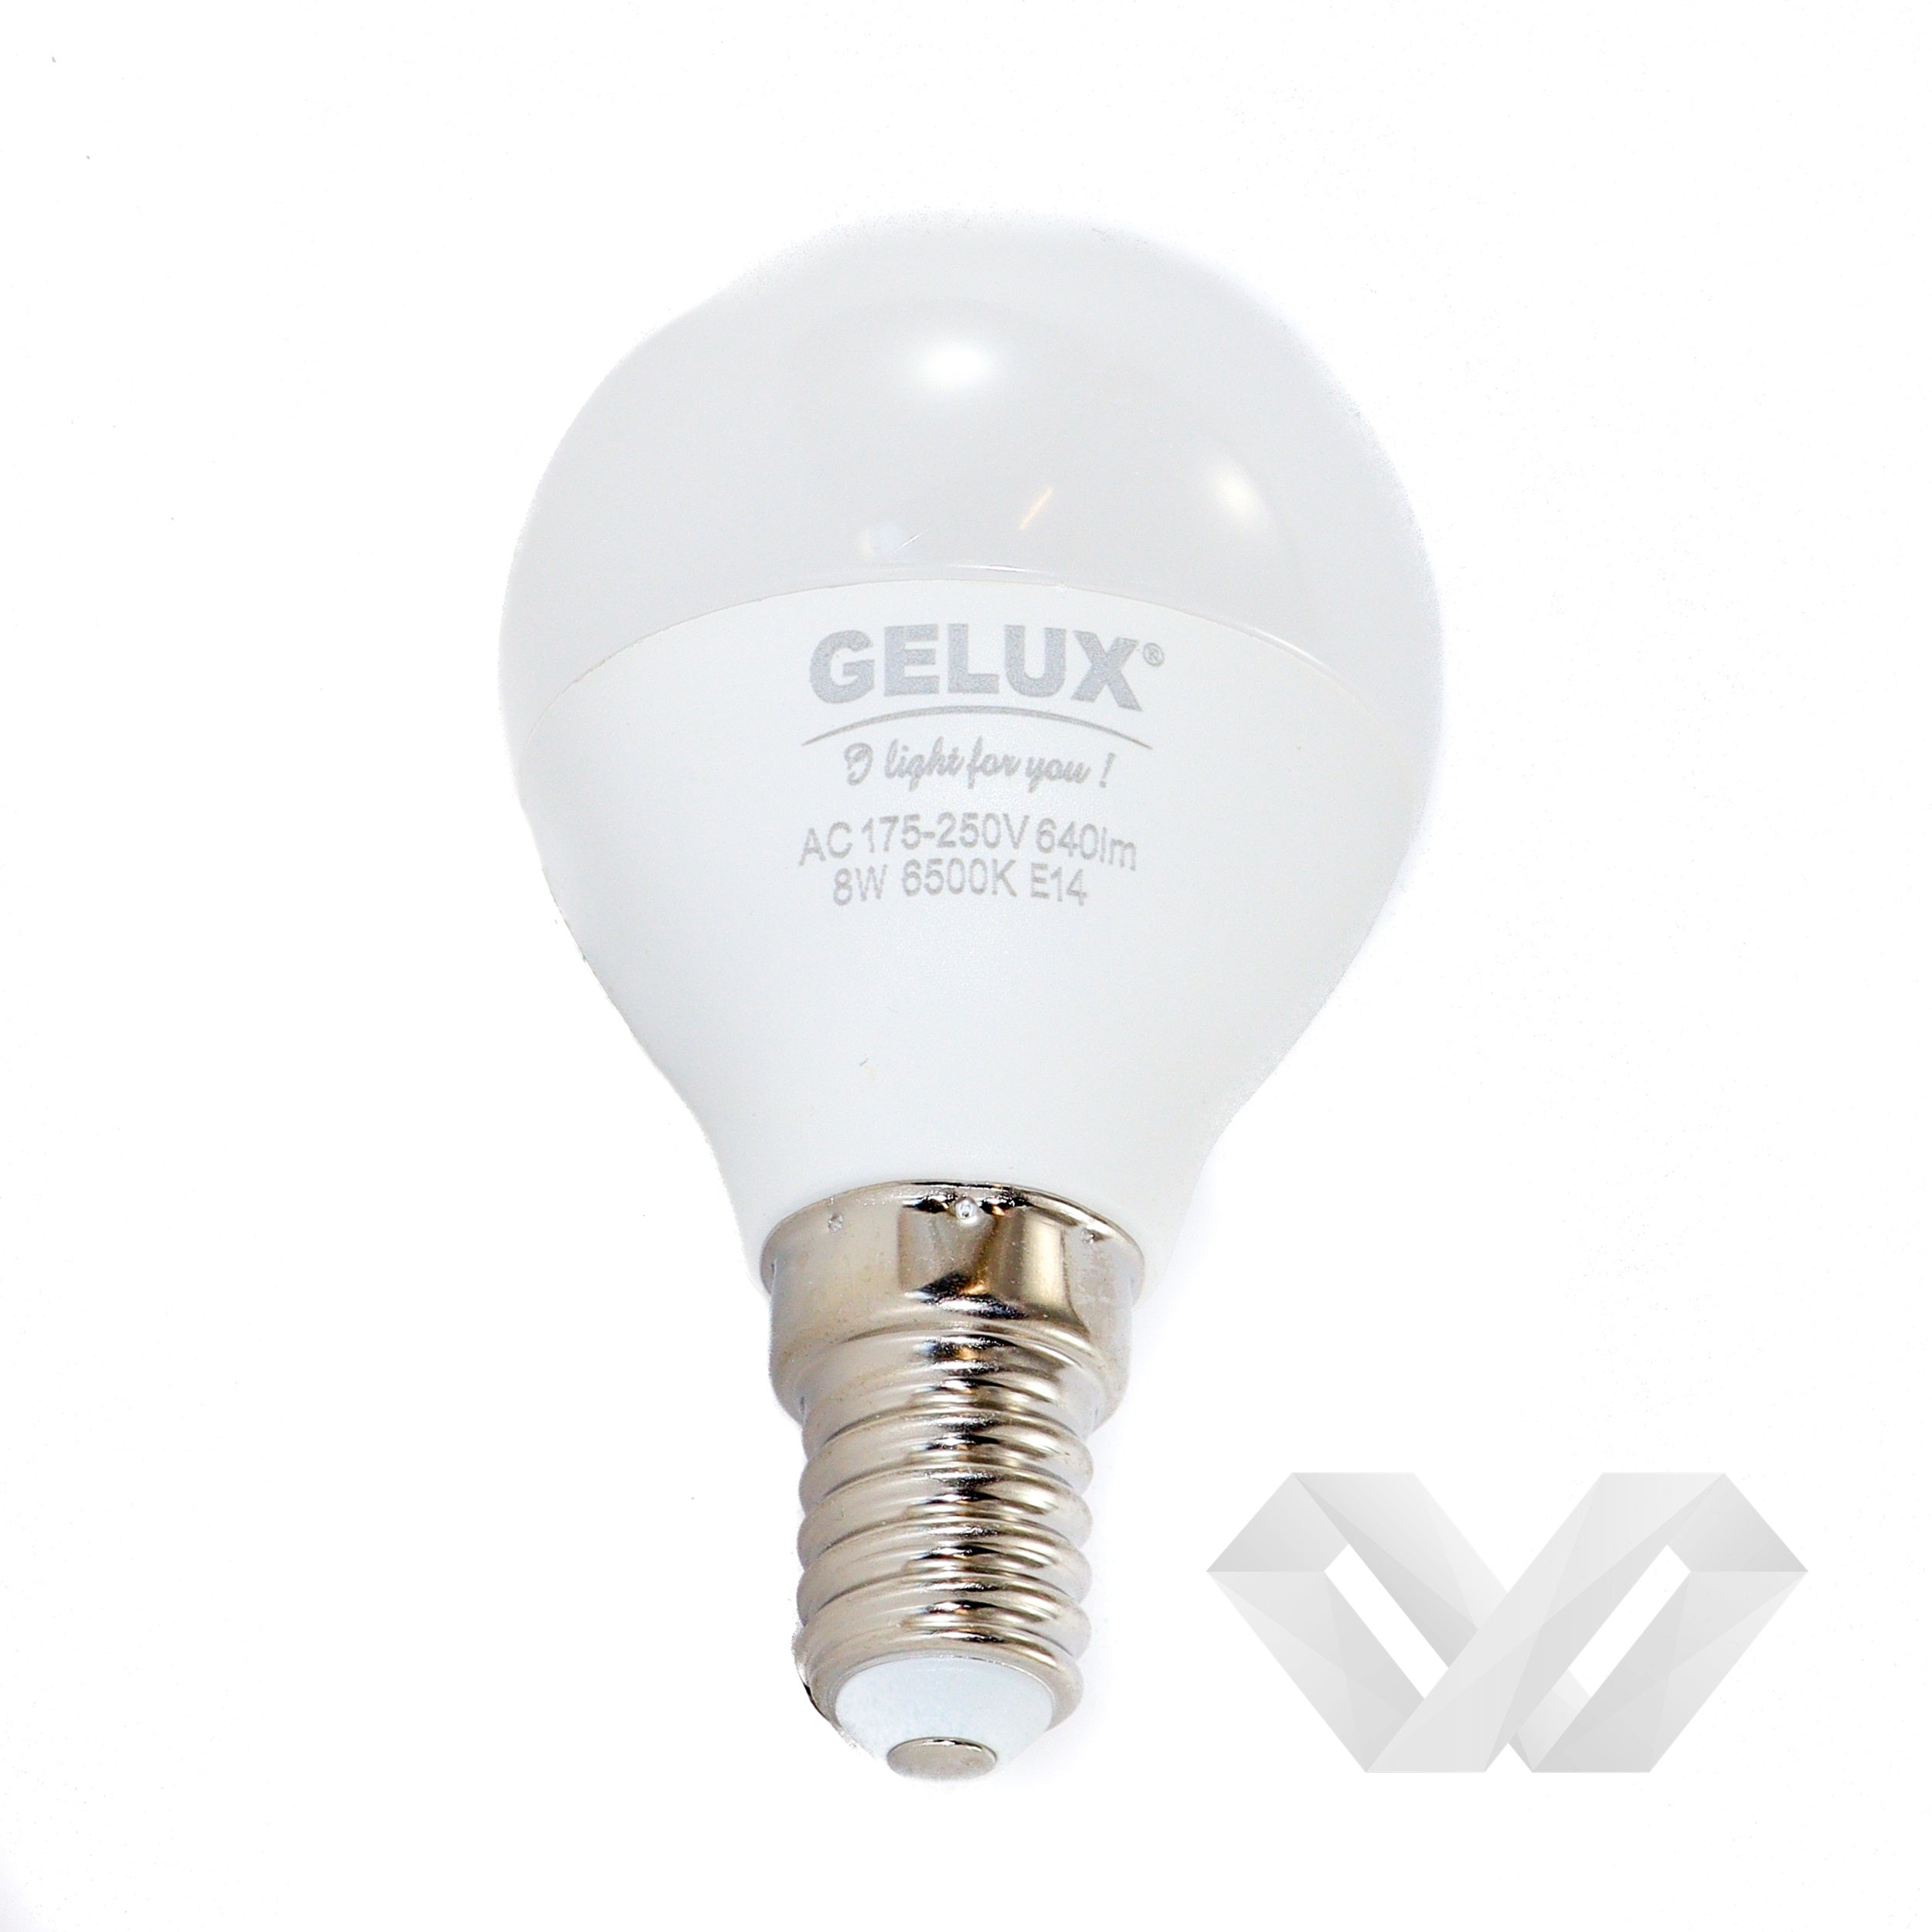 Bec LED Sferic 7W E14 ECOLED, echivalent 56W lumina calda, Gelux